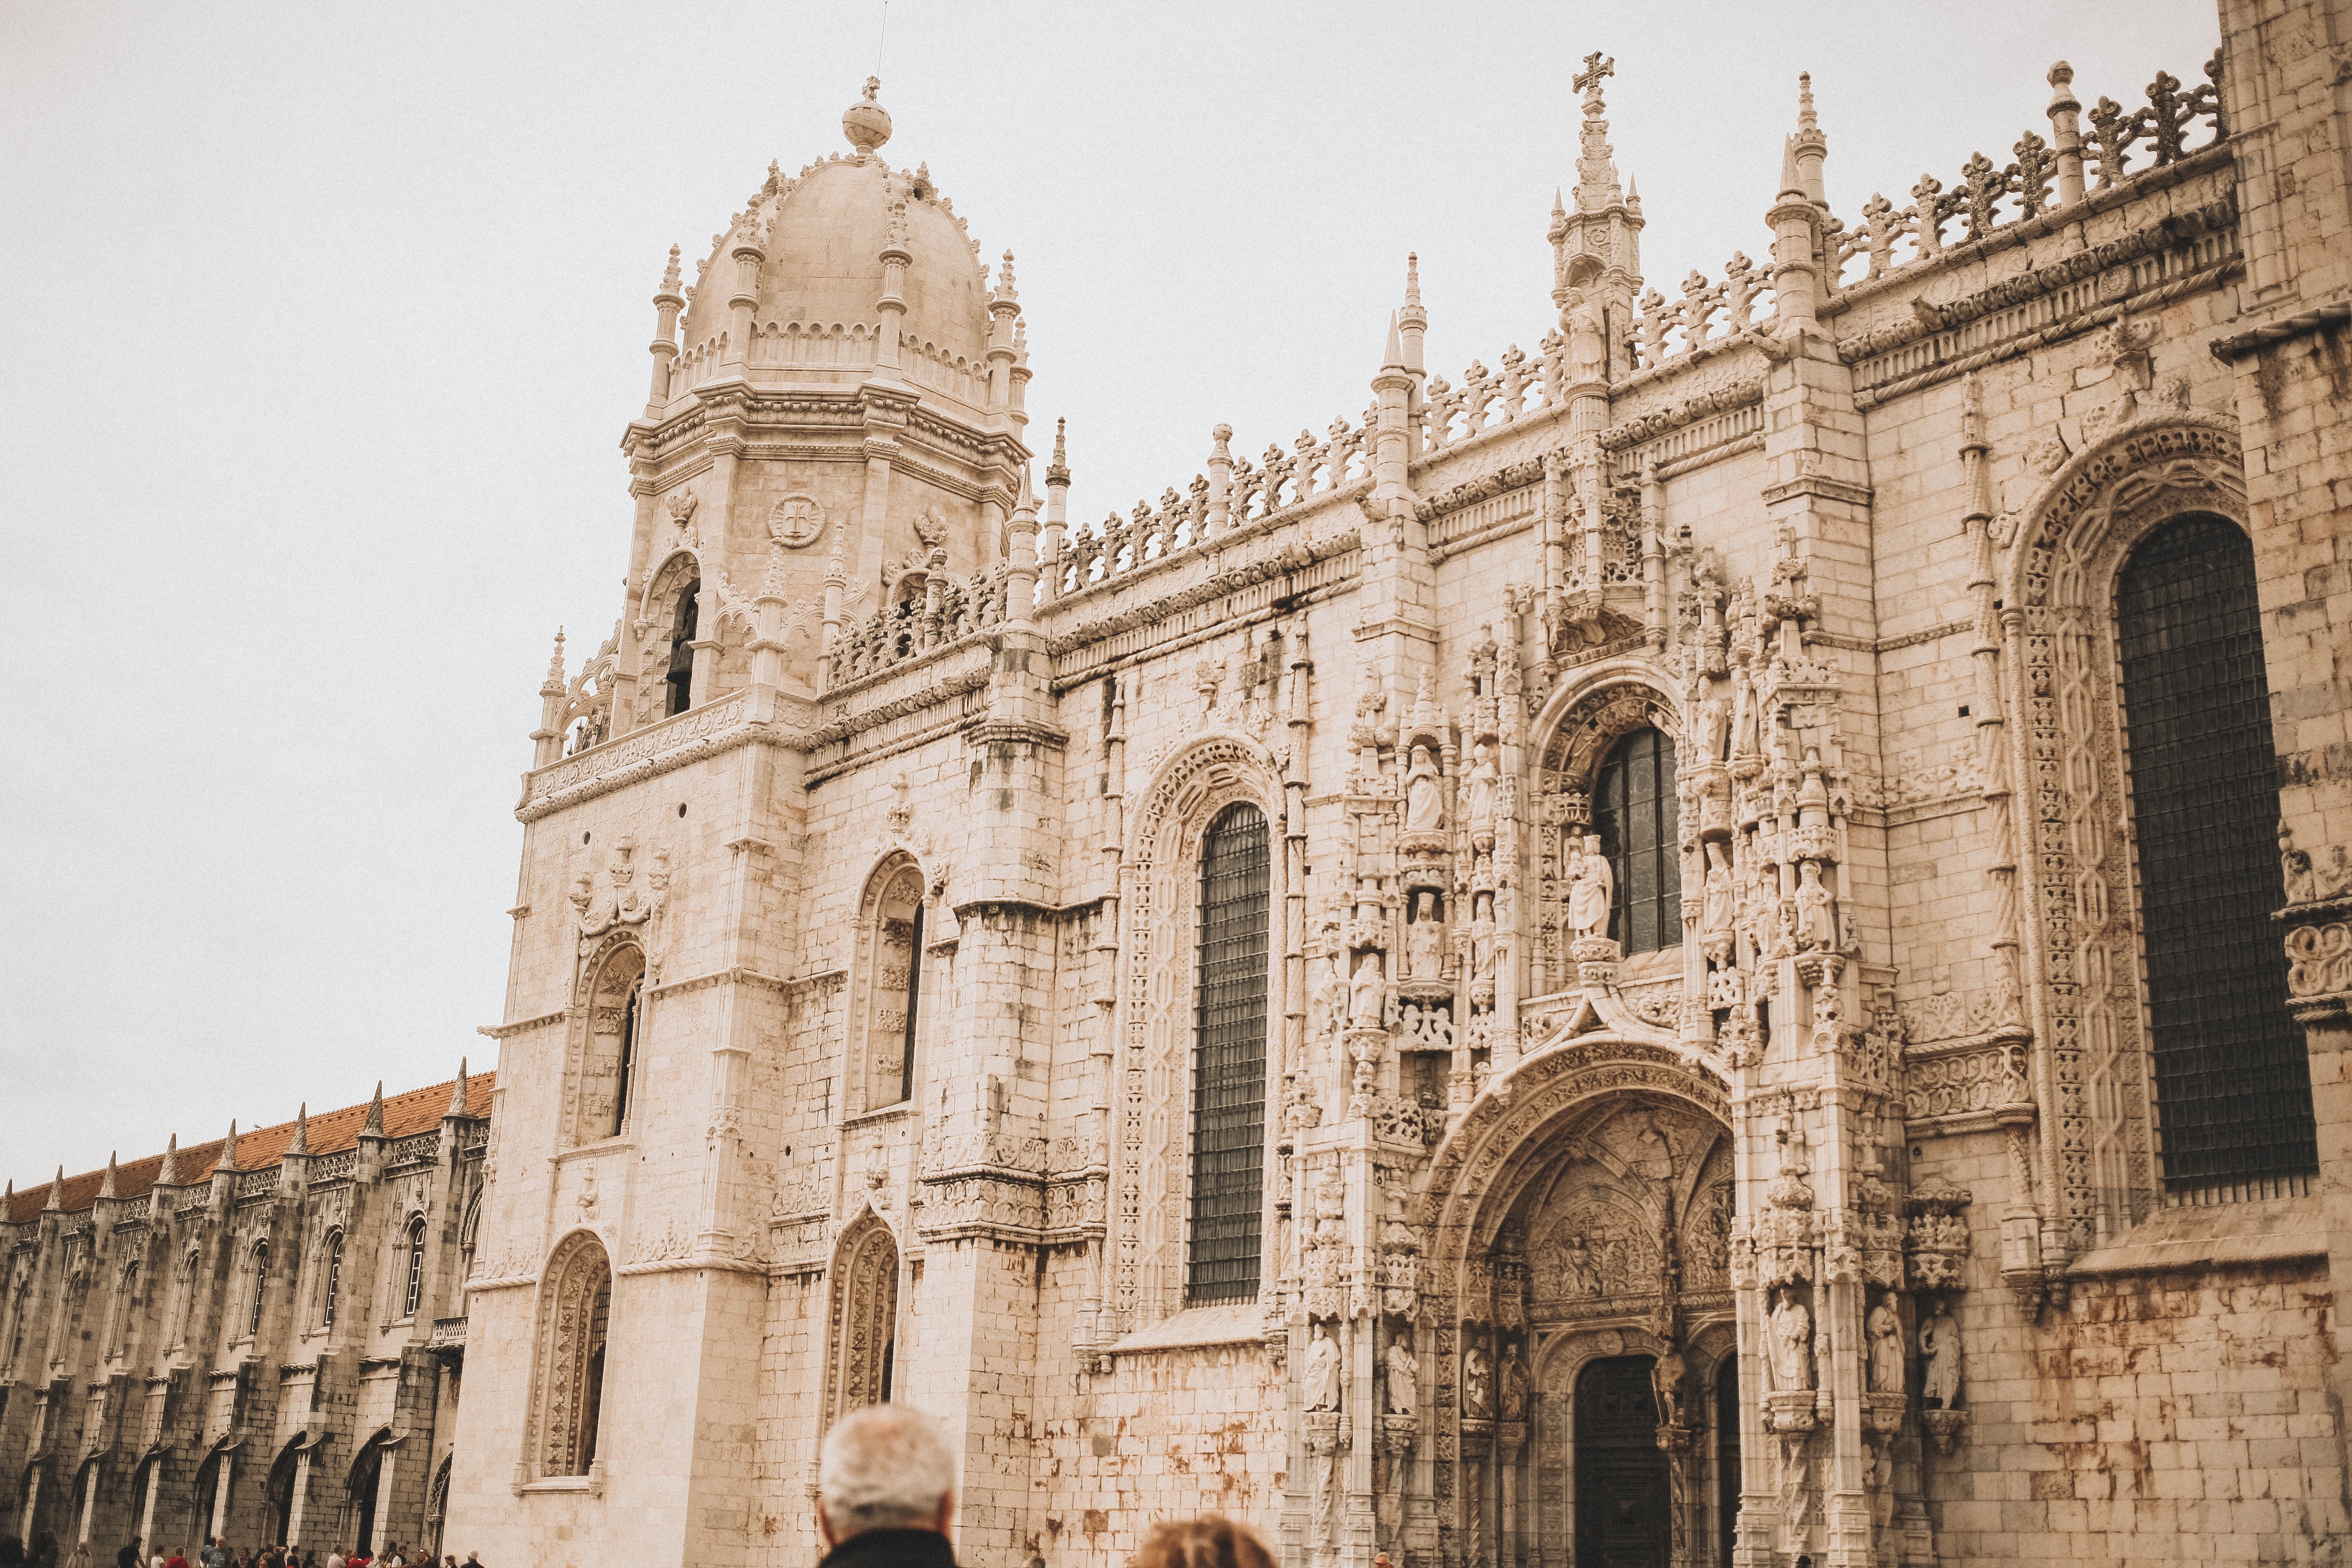 Lisboa, Mosteiro dos Jerónimos